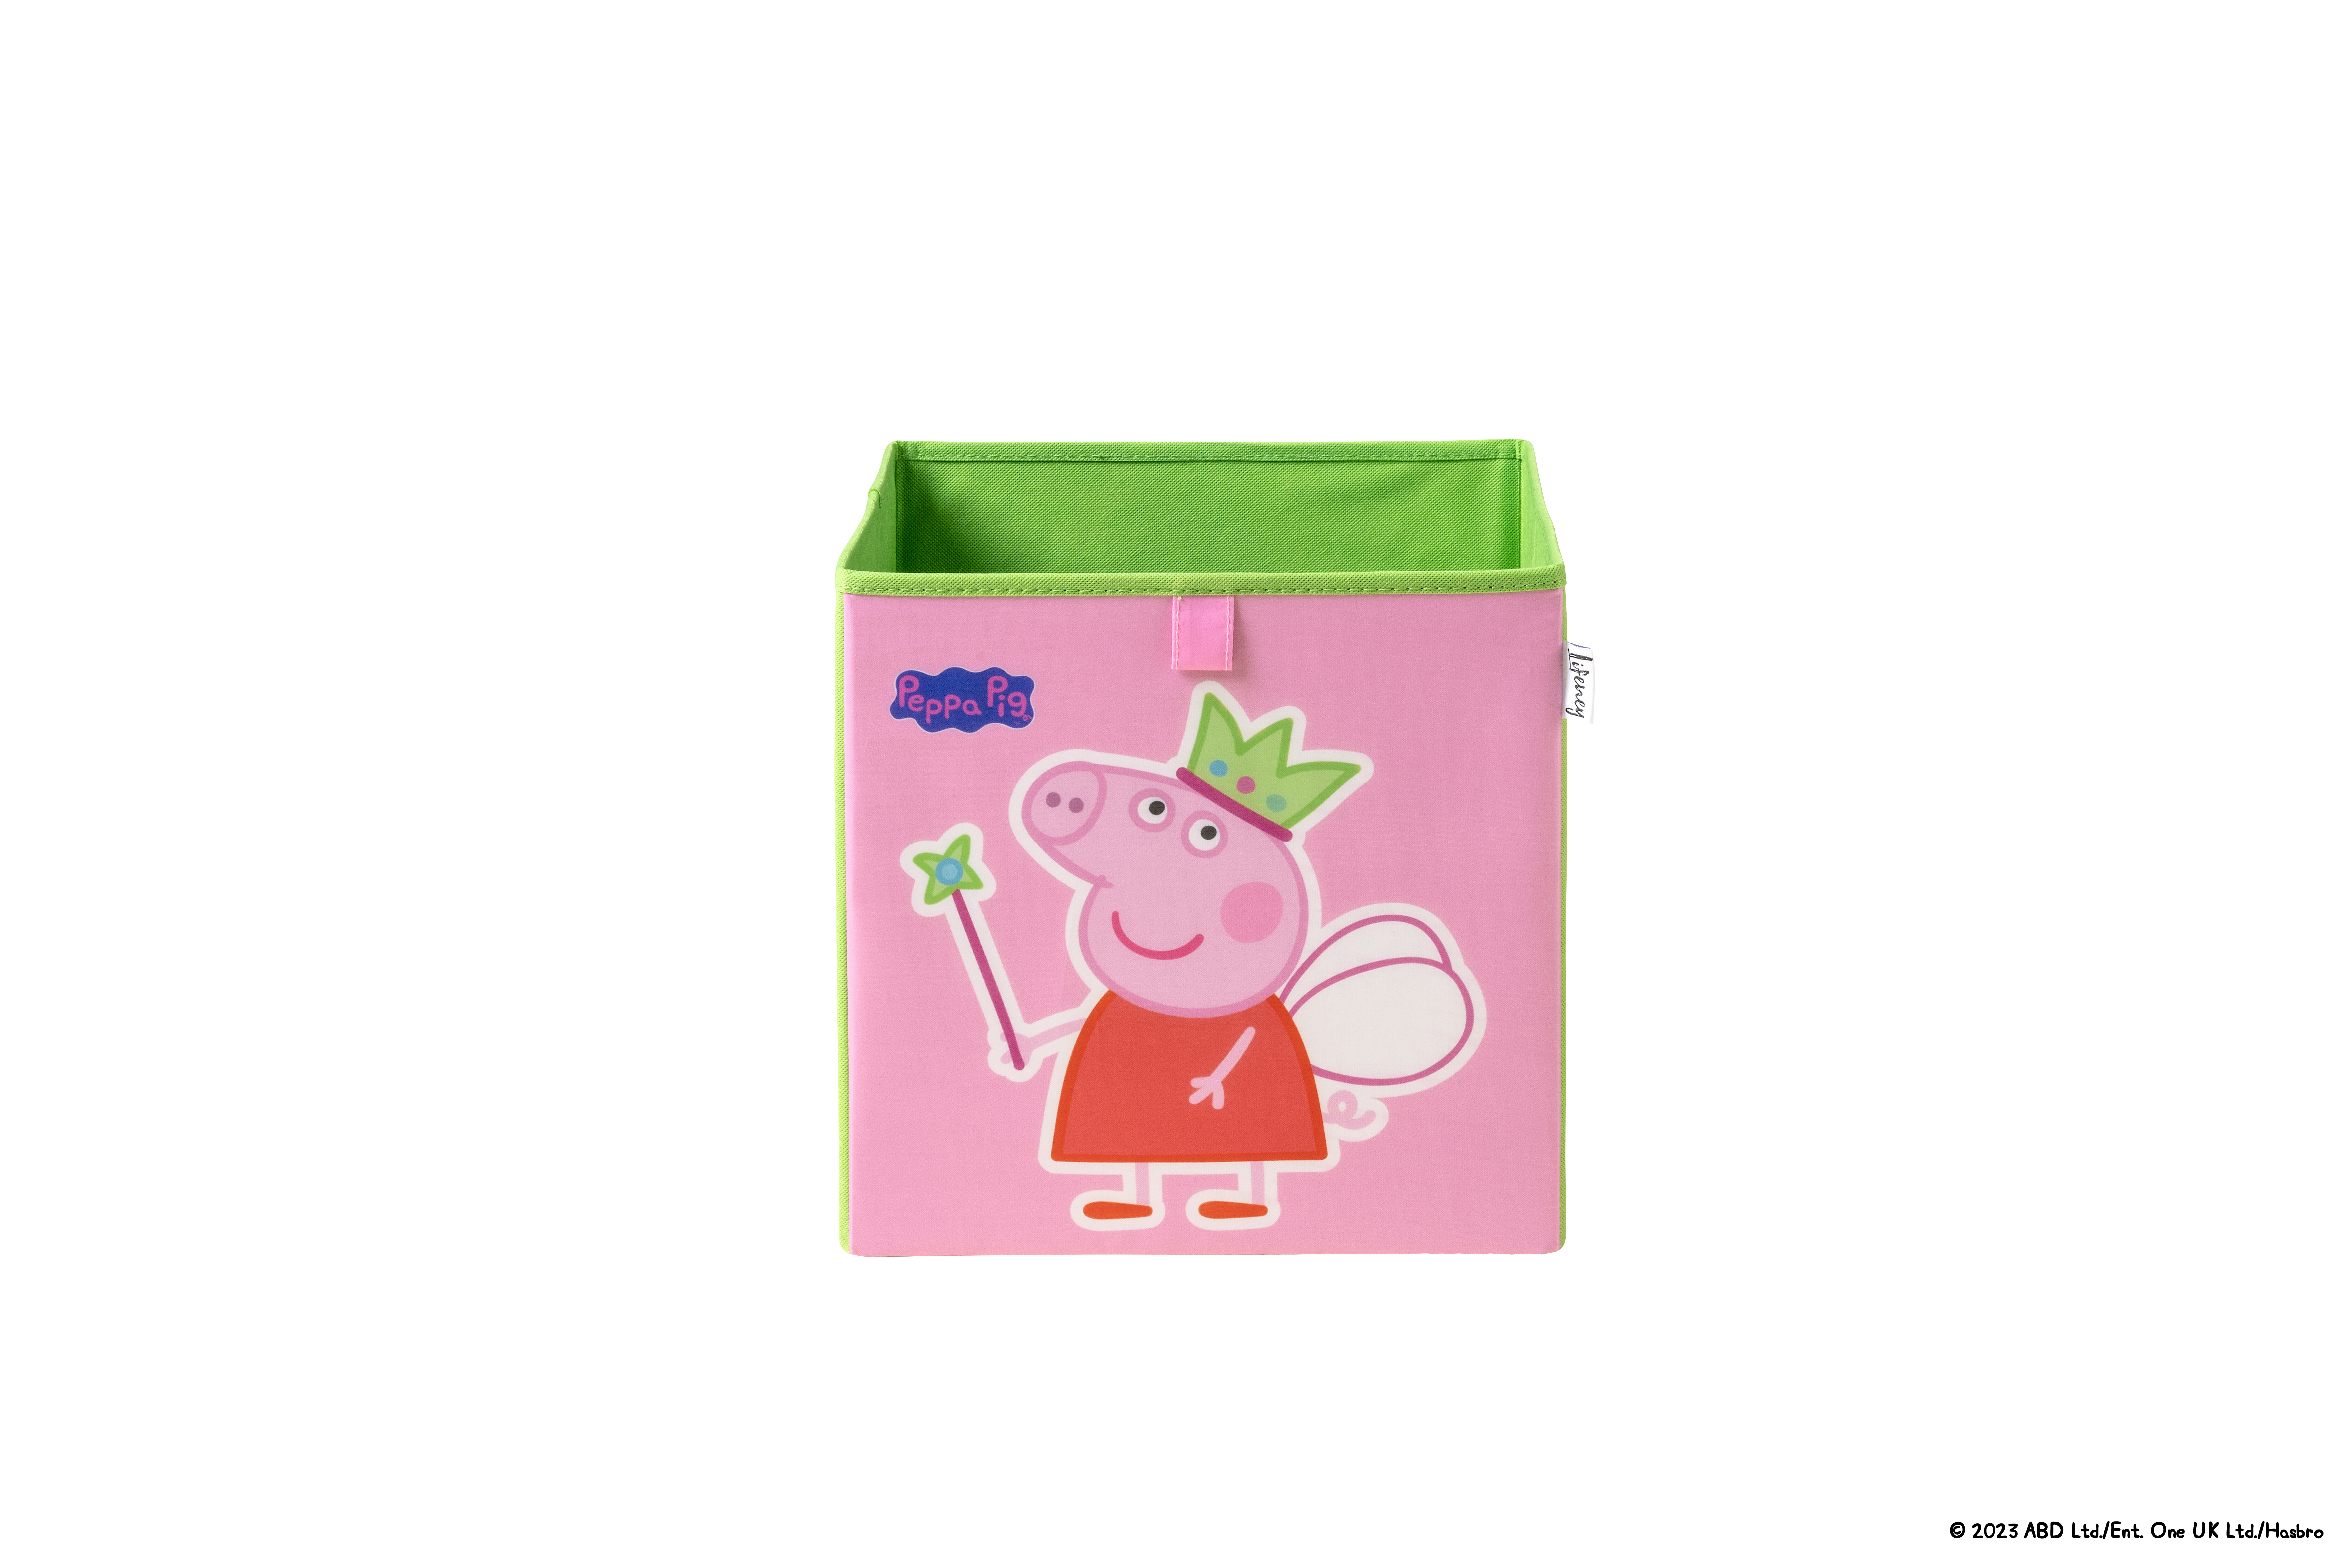 Lifeney - Caja de Almacenamiento con Dos Motivos: Hada y George - Ideal para Juguetes, Ropa y Más - Diseño de Peppa Pig - 5 Años de Garantía